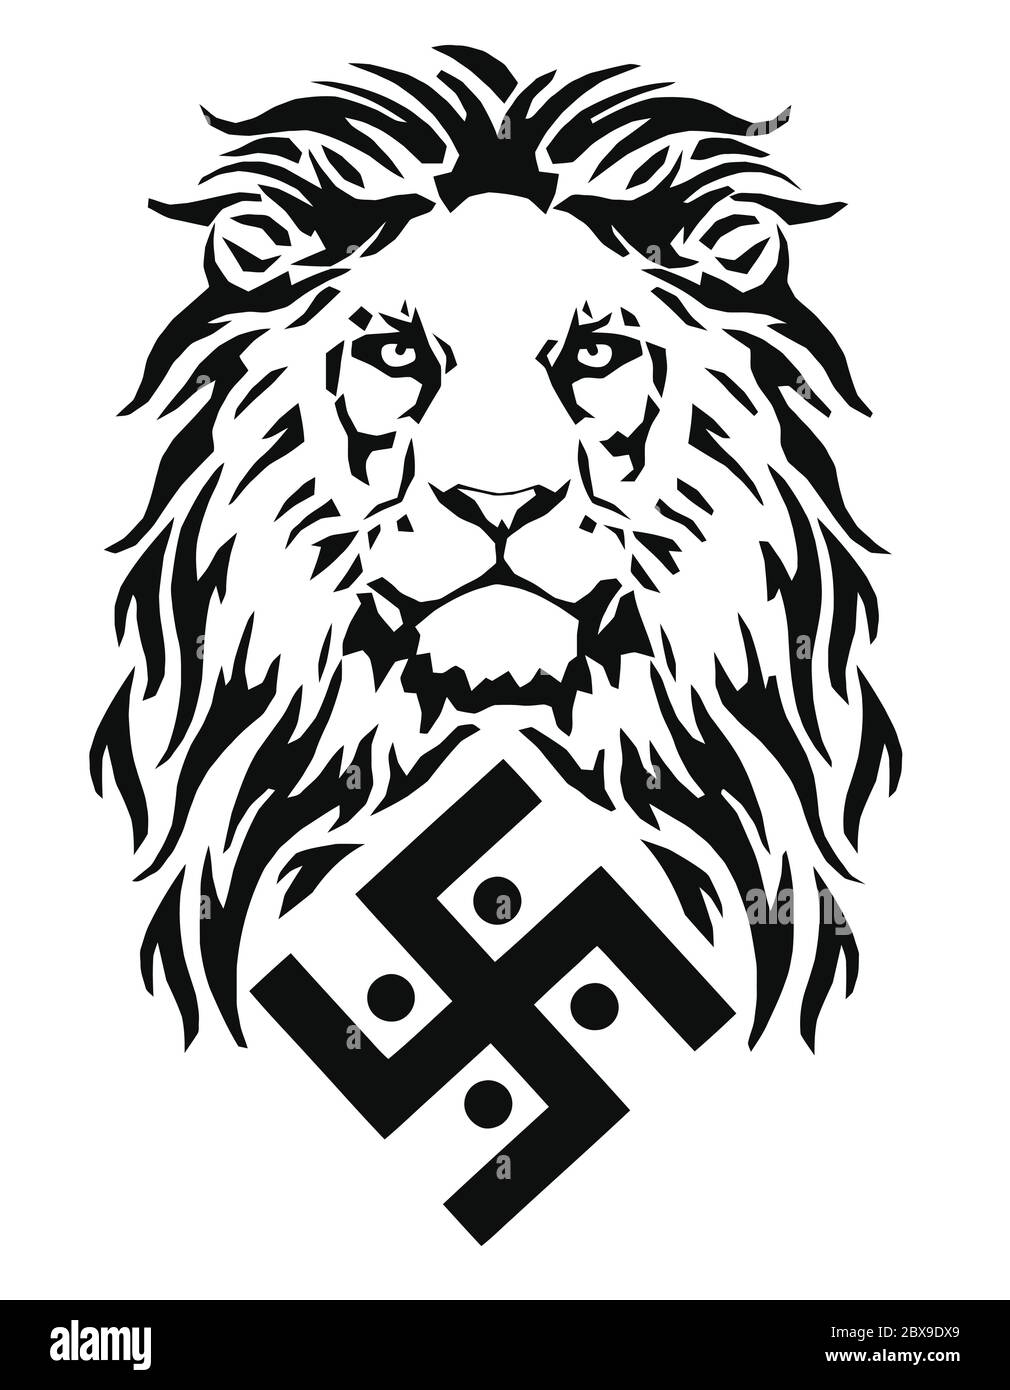 Der Löwe und das Symbol der indischen Religion des Jainismus - das Hakenkreuz, Zeichnung für Tattoos, auf einem weißen Hintergrund, Vektor Stock Vektor